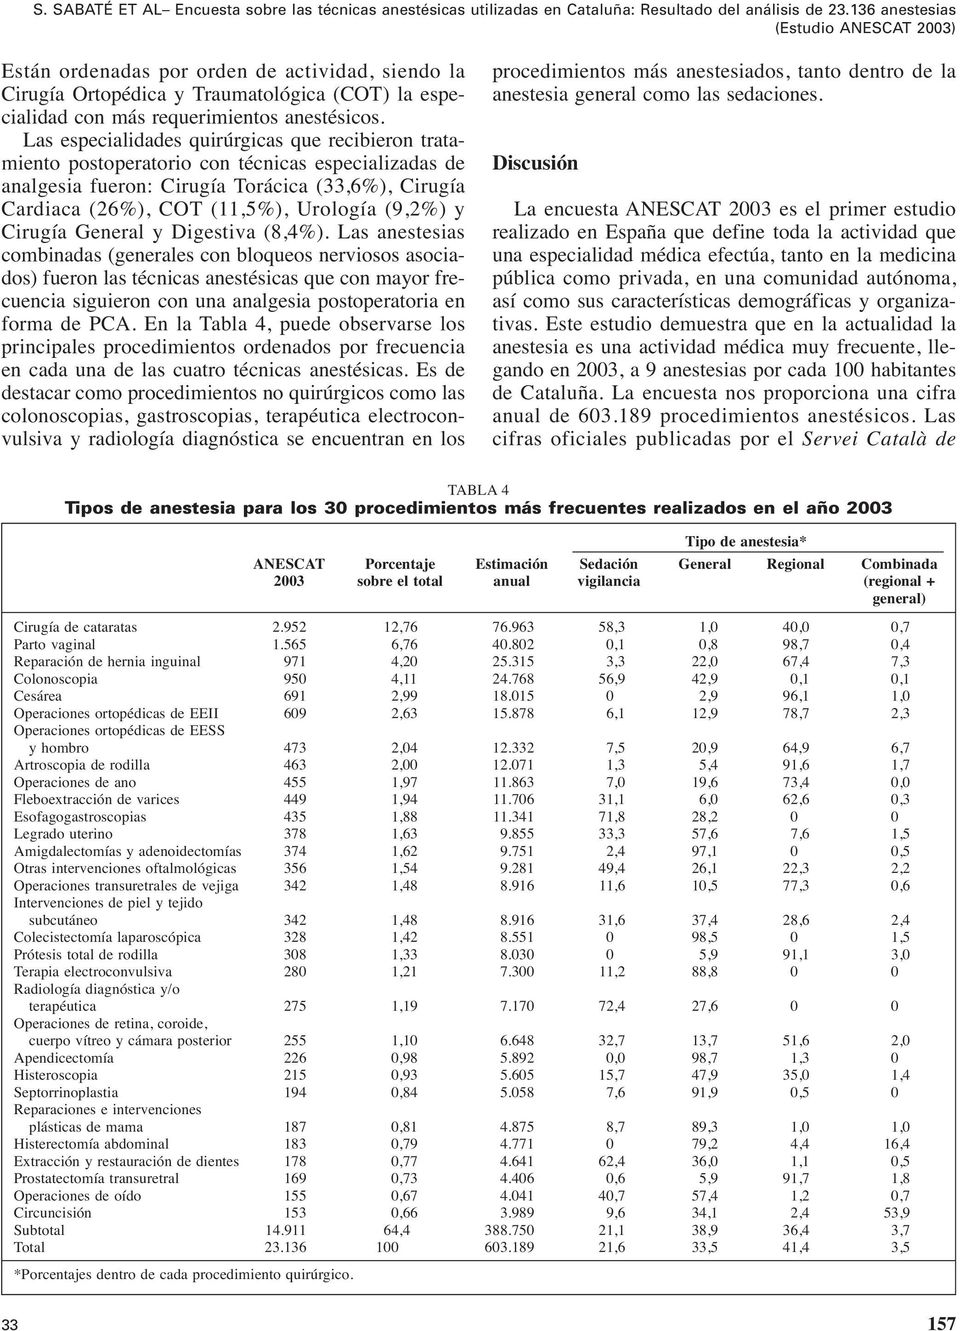 Las especialidades quirúrgicas que recibieron tratamiento postoperatorio con técnicas especializadas de analgesia fueron: Cirugía Torácica (33,6%), Cirugía Cardiaca (26%), COT (11,5%), Urología